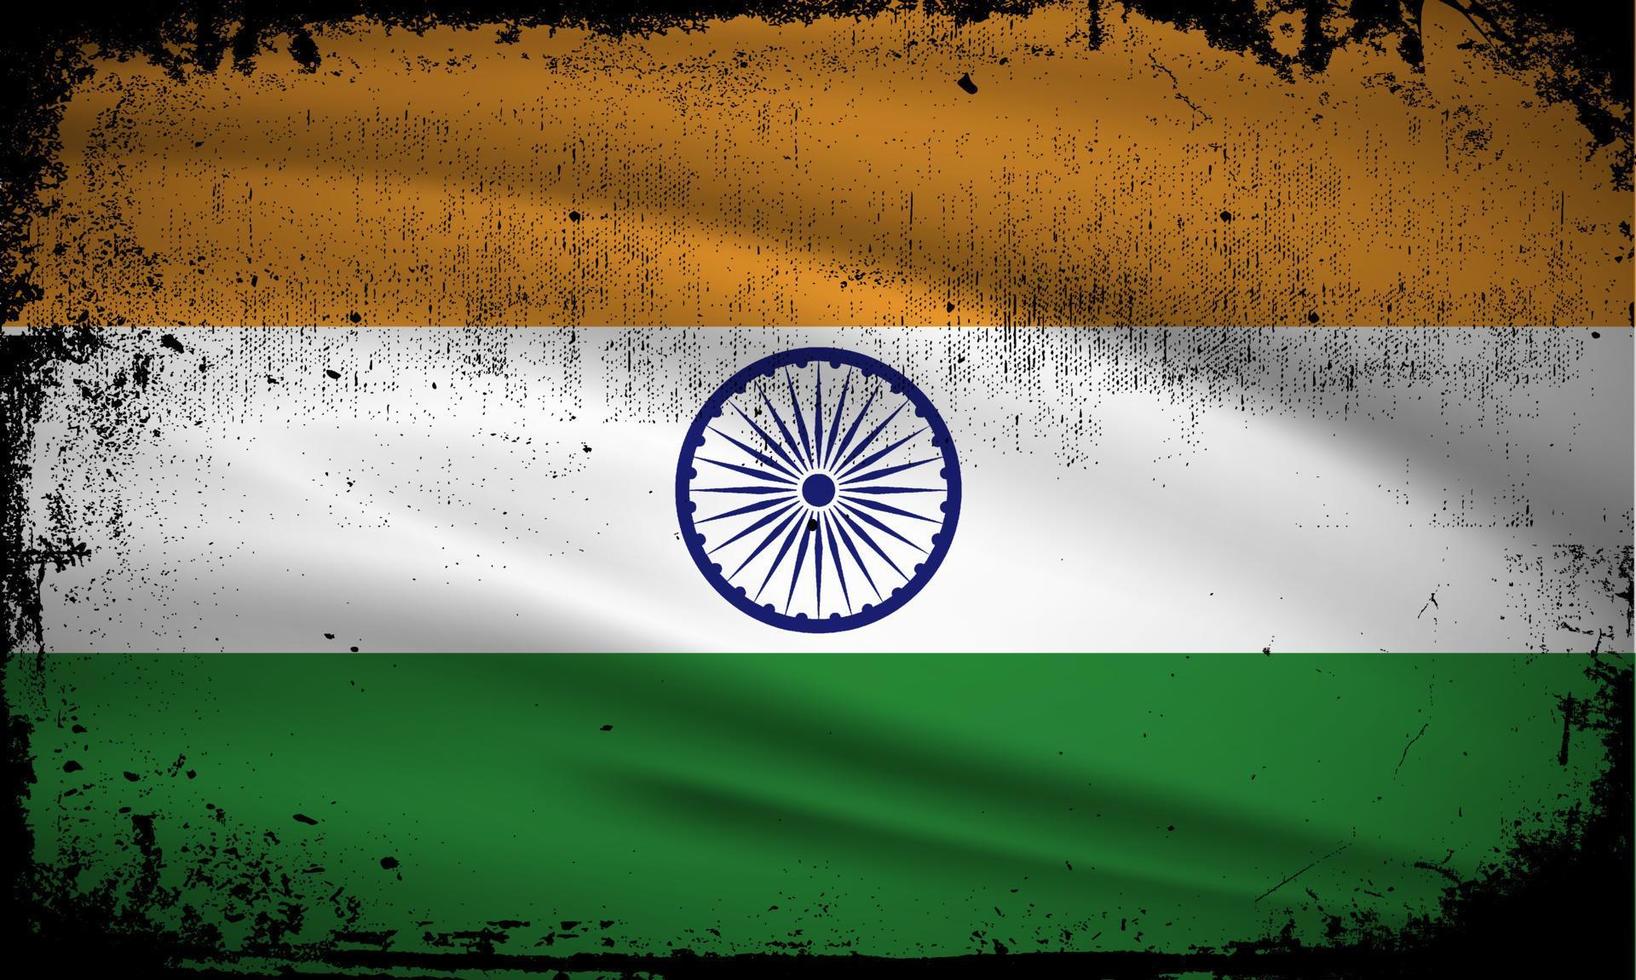 nouveau vecteur abstrait de fond de drapeau indien avec style de trait grunge. illustration vectorielle du jour de l'indépendance de l'inde.